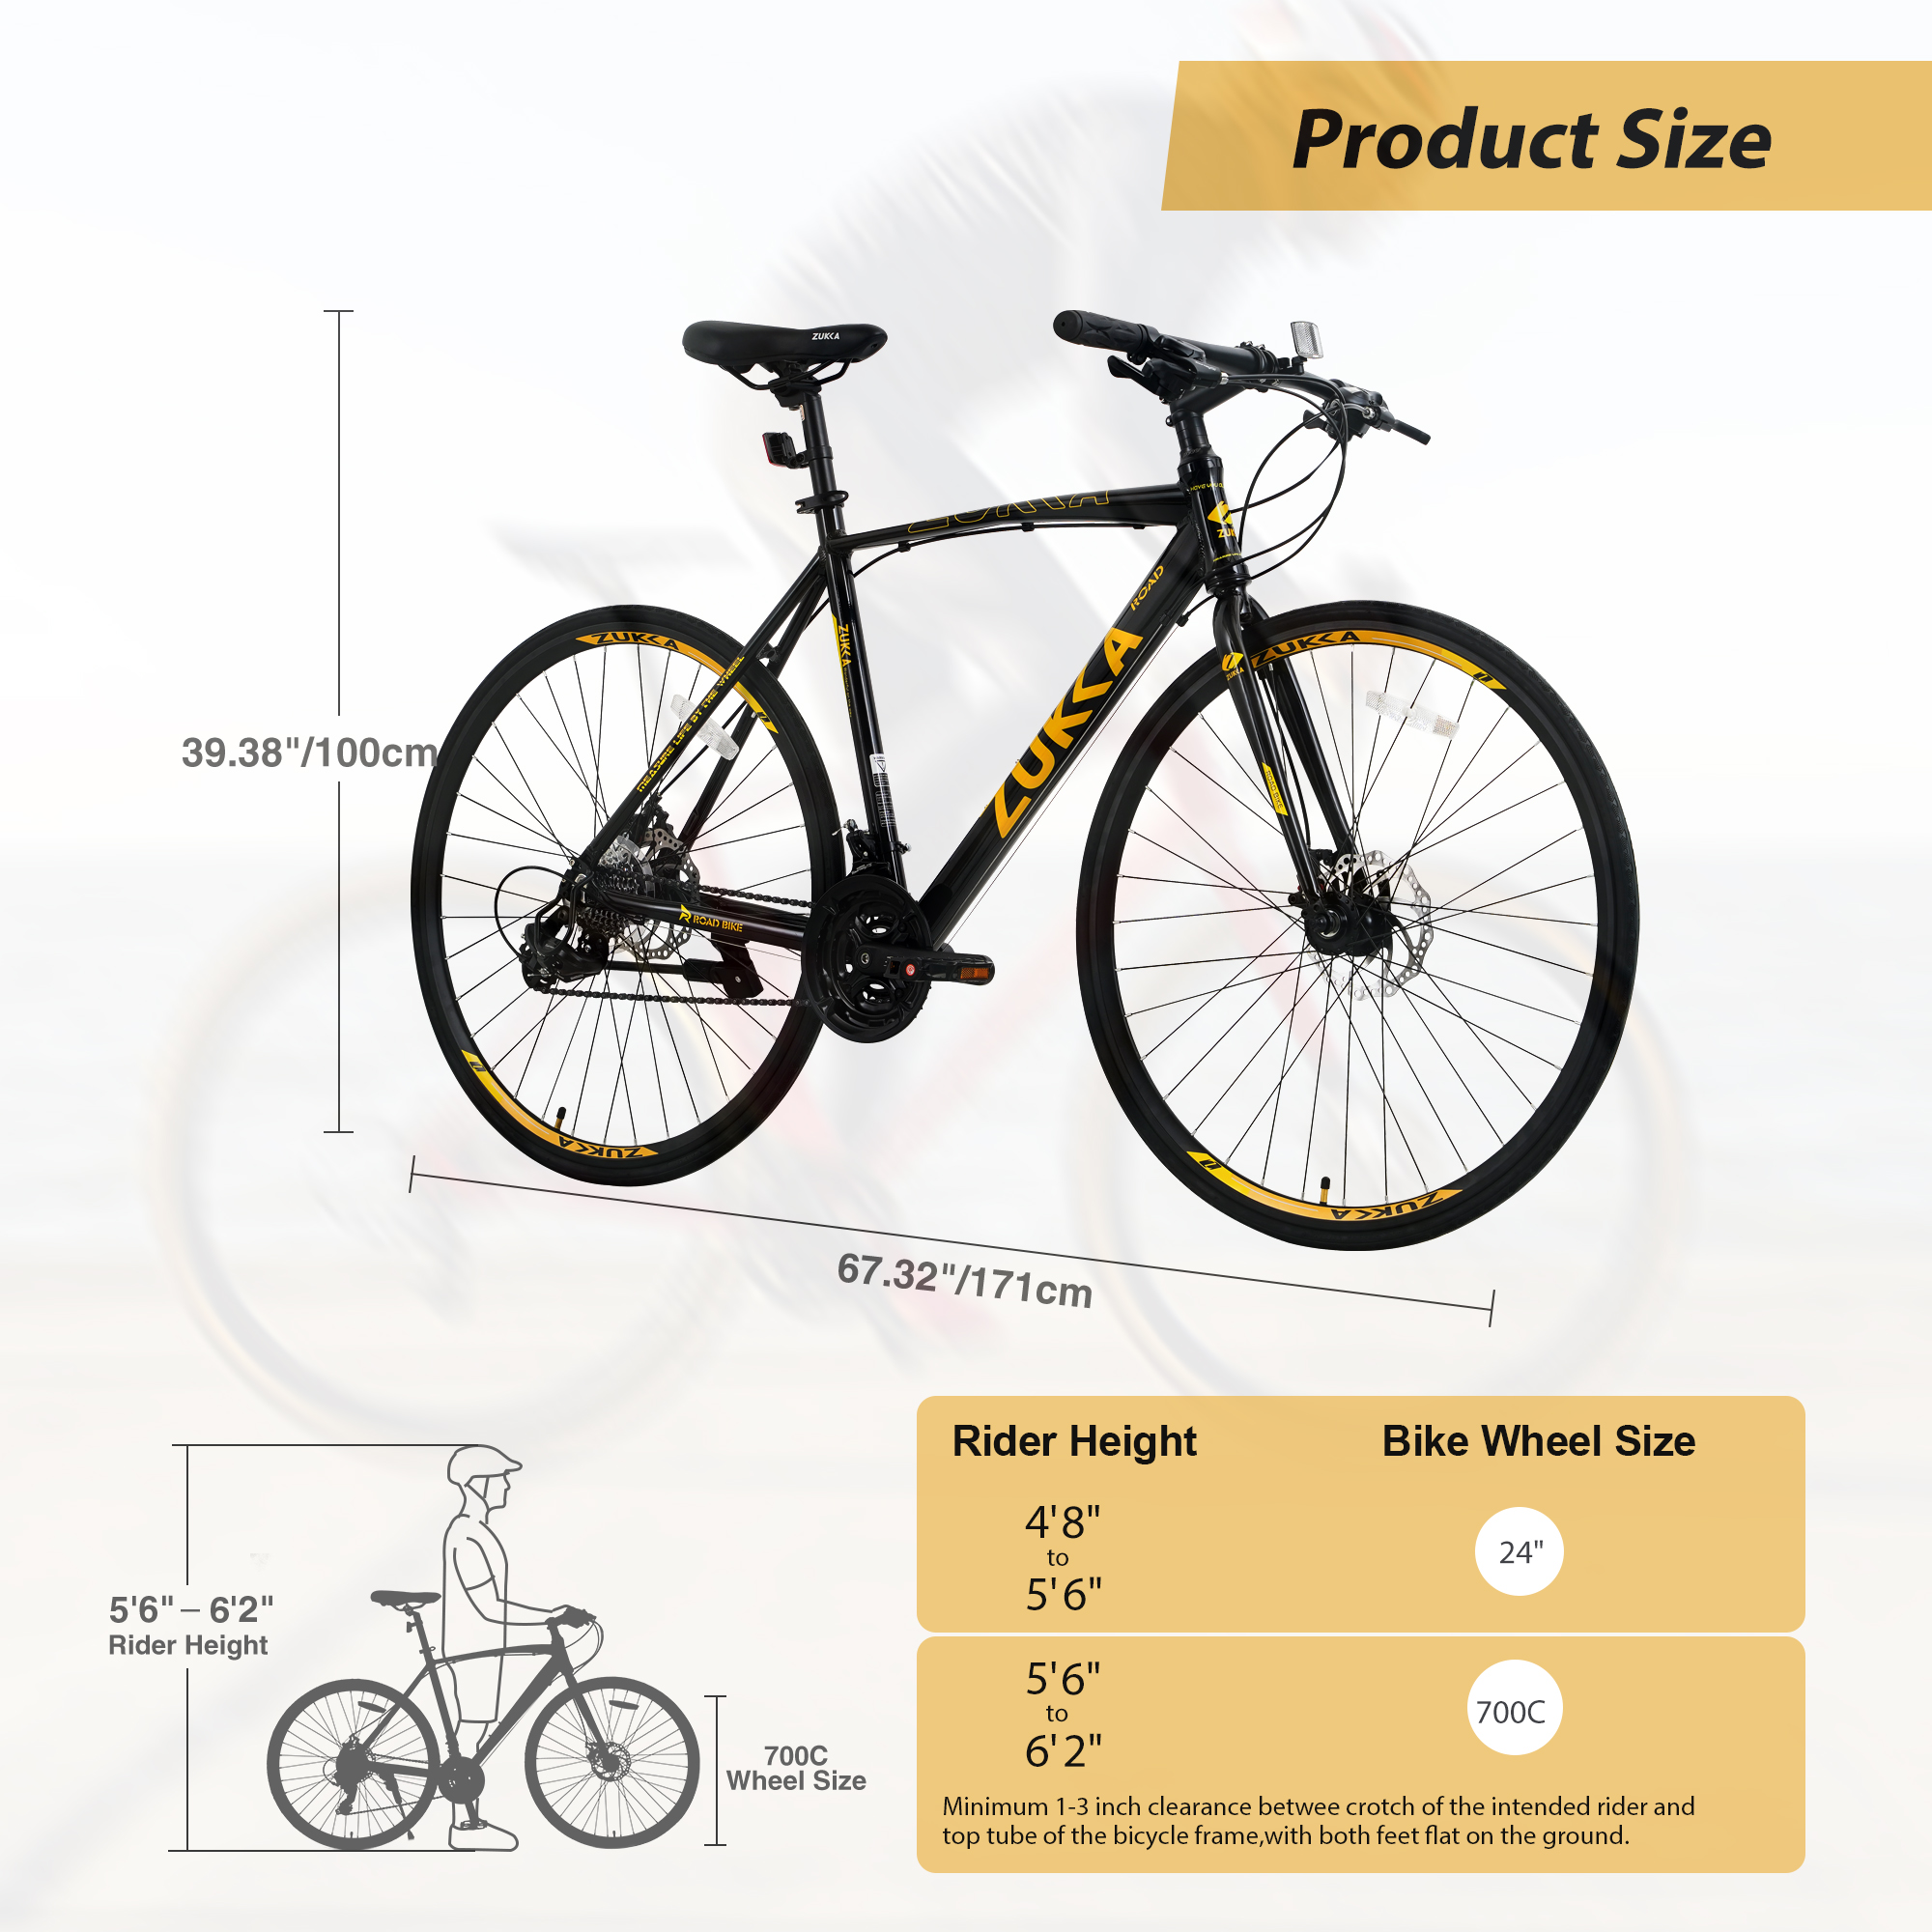 Zukka Road Bike 700C 24 Speed Aluminum Alloy Frame Bicycle for Unisex Adult Hybrid Bike Black - image 3 of 6